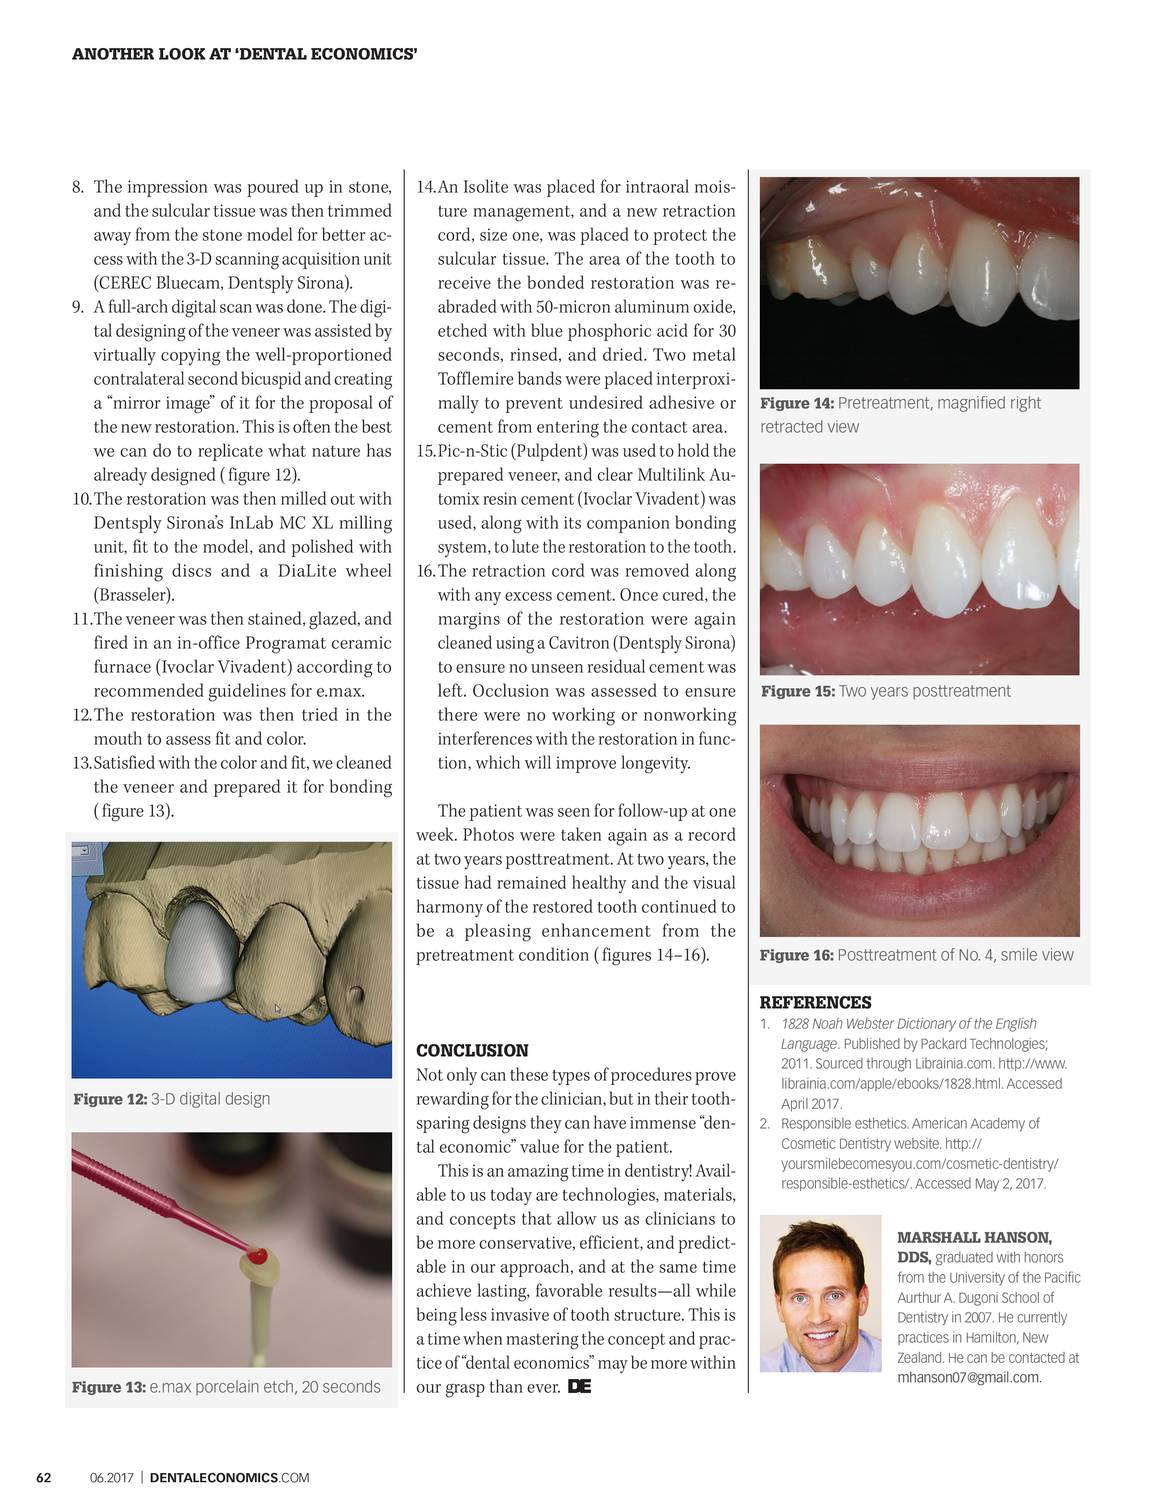 Dental Economics June 2017 Page 61 - 